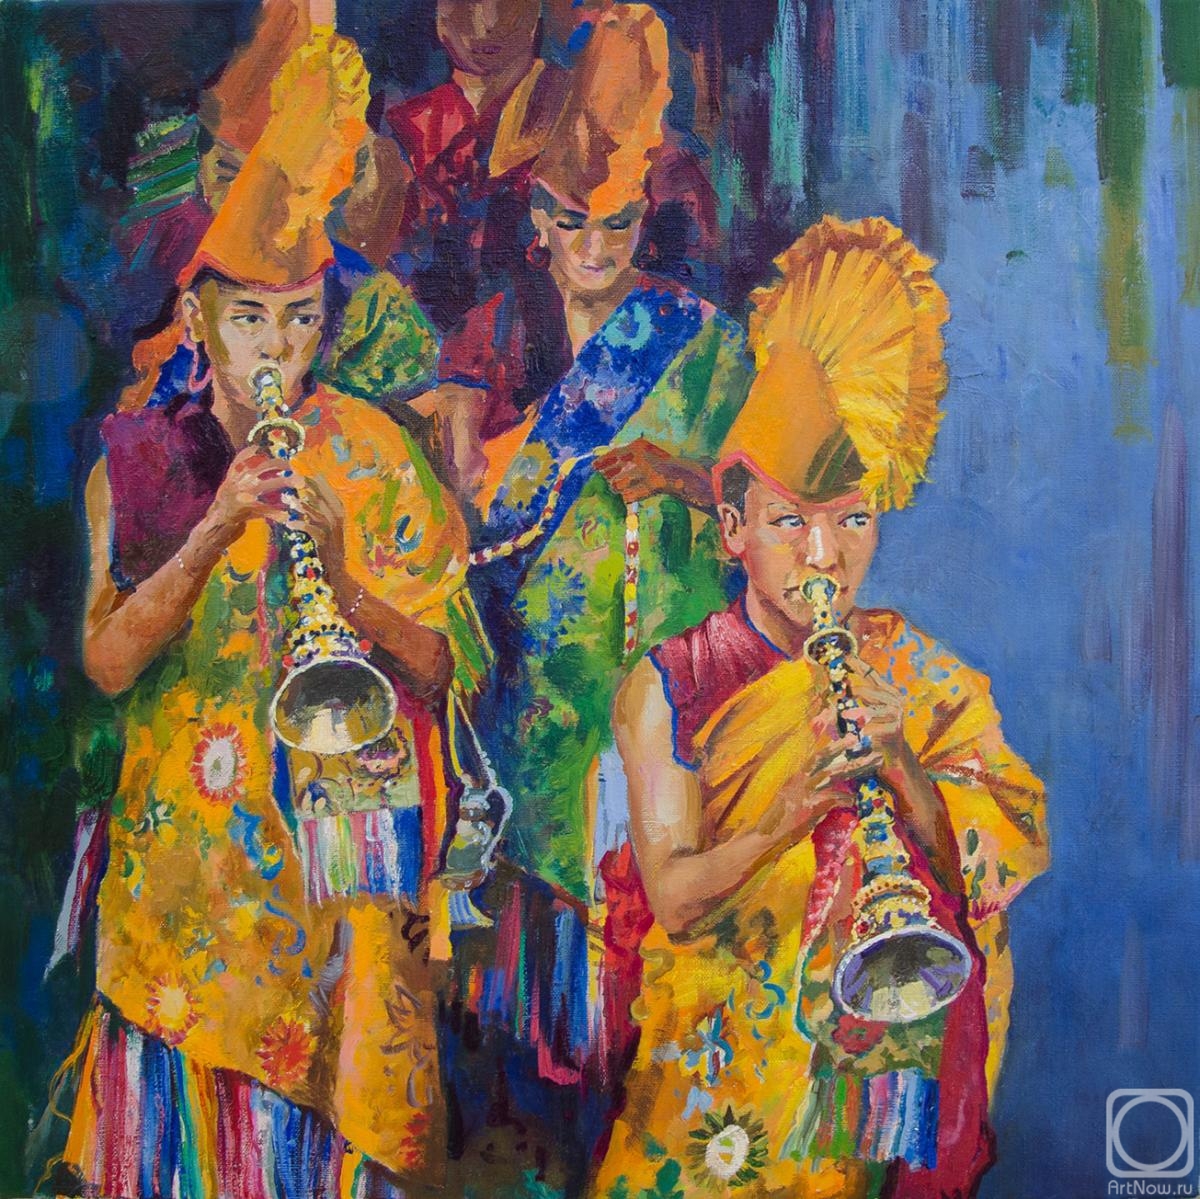 Takhtamyshev Sergey. Tibet musicians